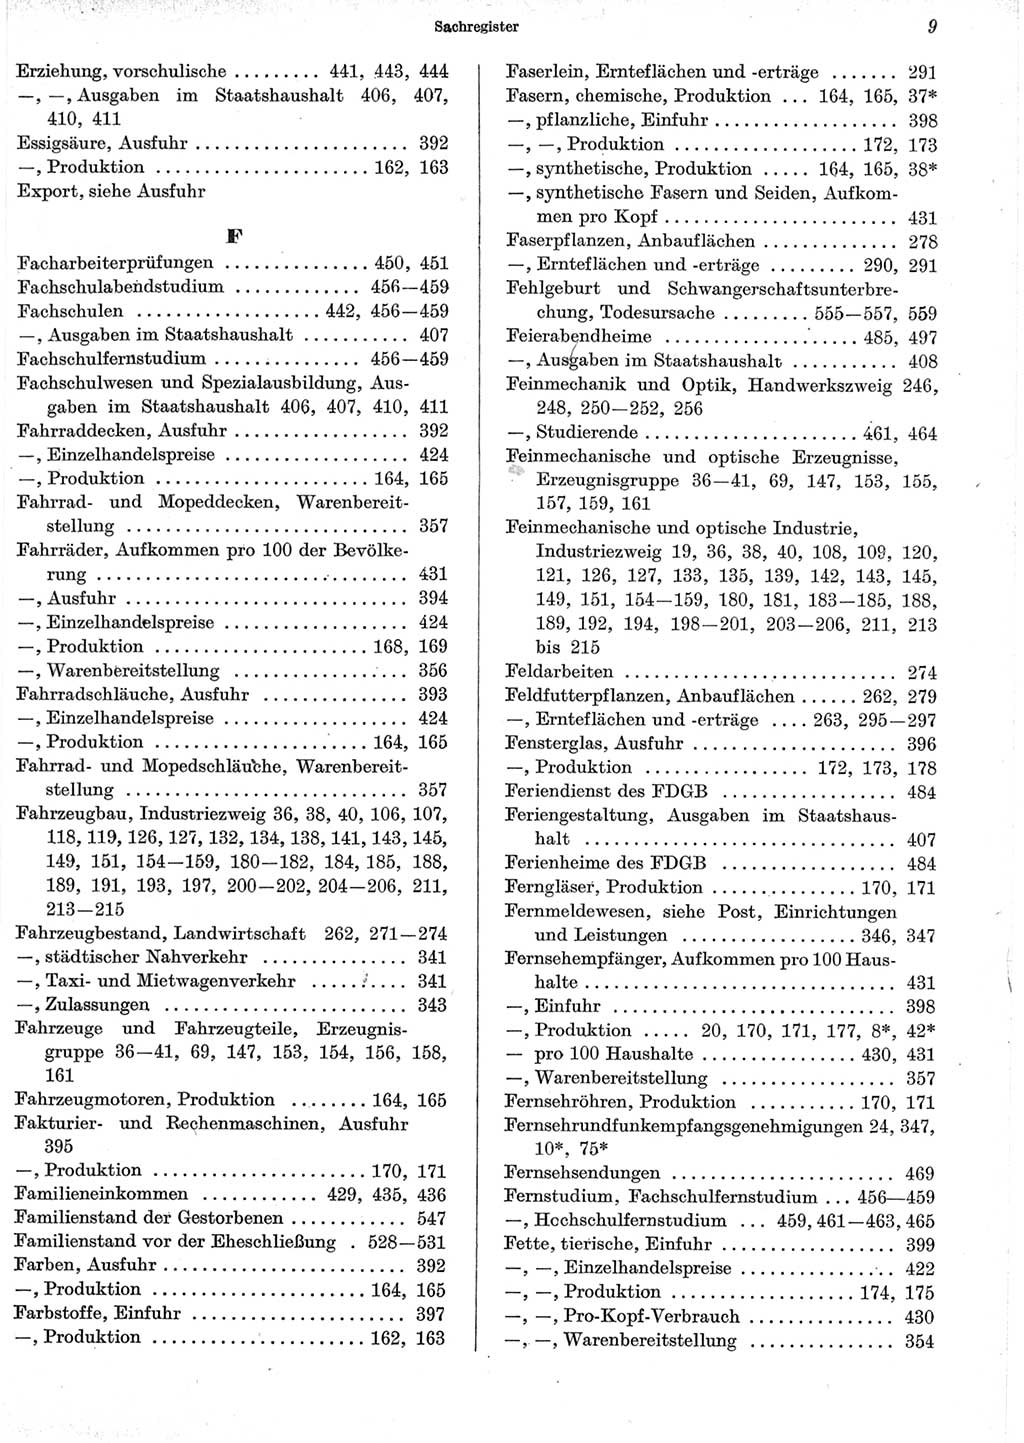 Statistisches Jahrbuch der Deutschen Demokratischen Republik (DDR) 1965, Seite 9 (Stat. Jb. DDR 1965, S. 9)